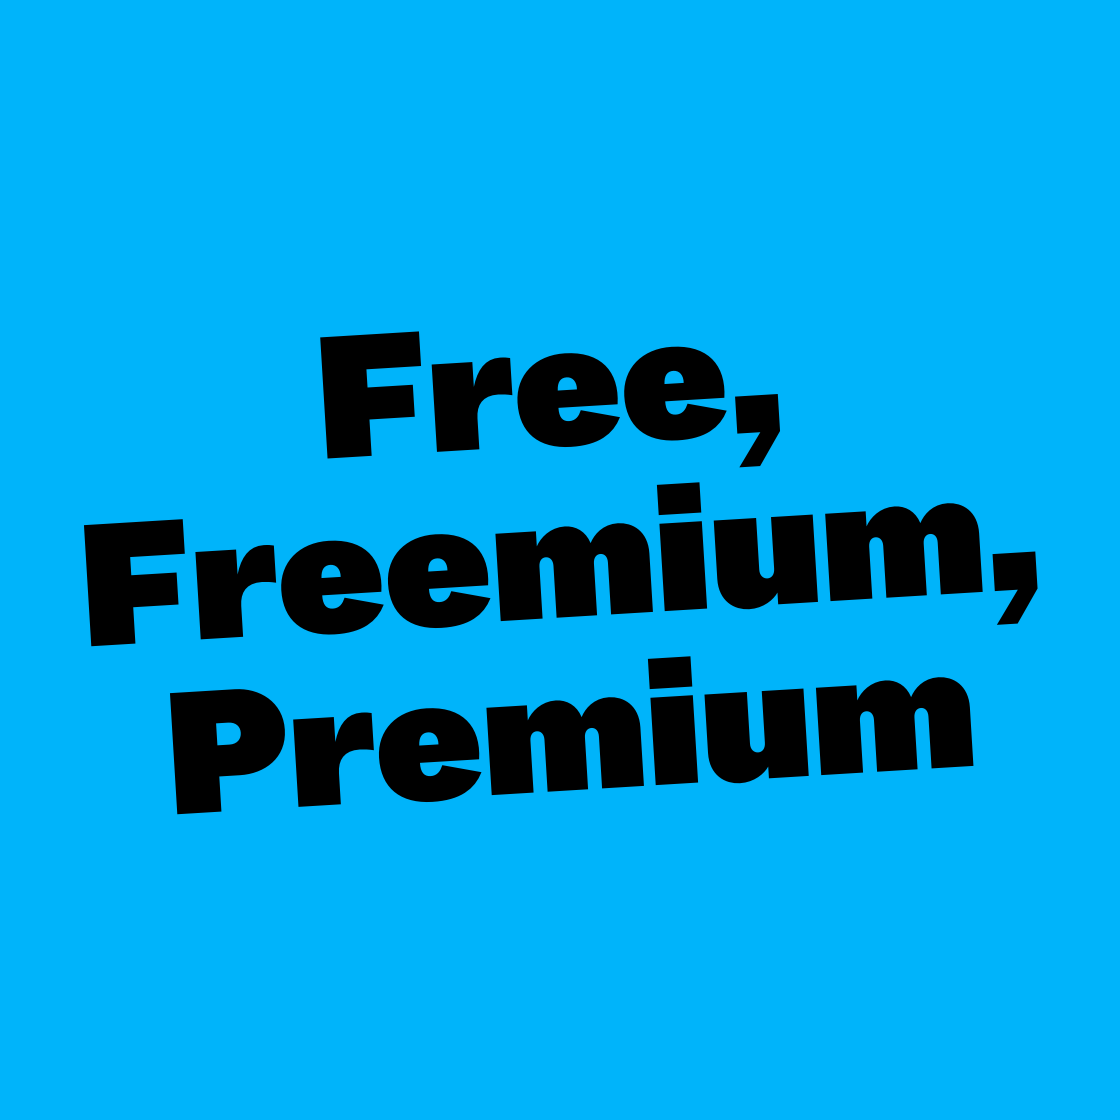 Free, Freemium, Premium (VUT Indie Days)